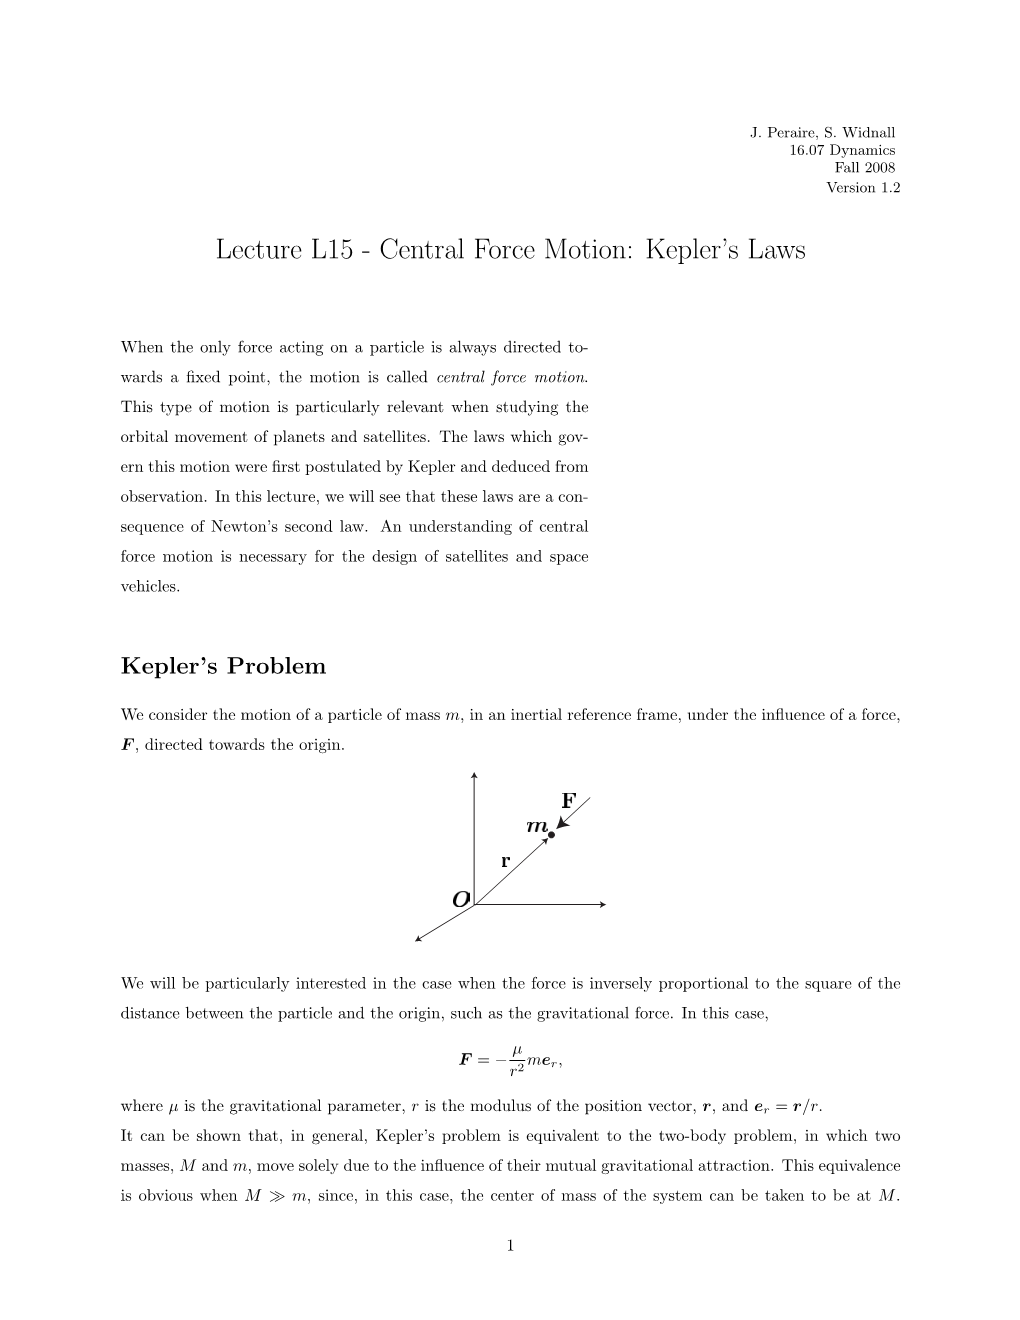 Central Force Motion: Kepler's Laws